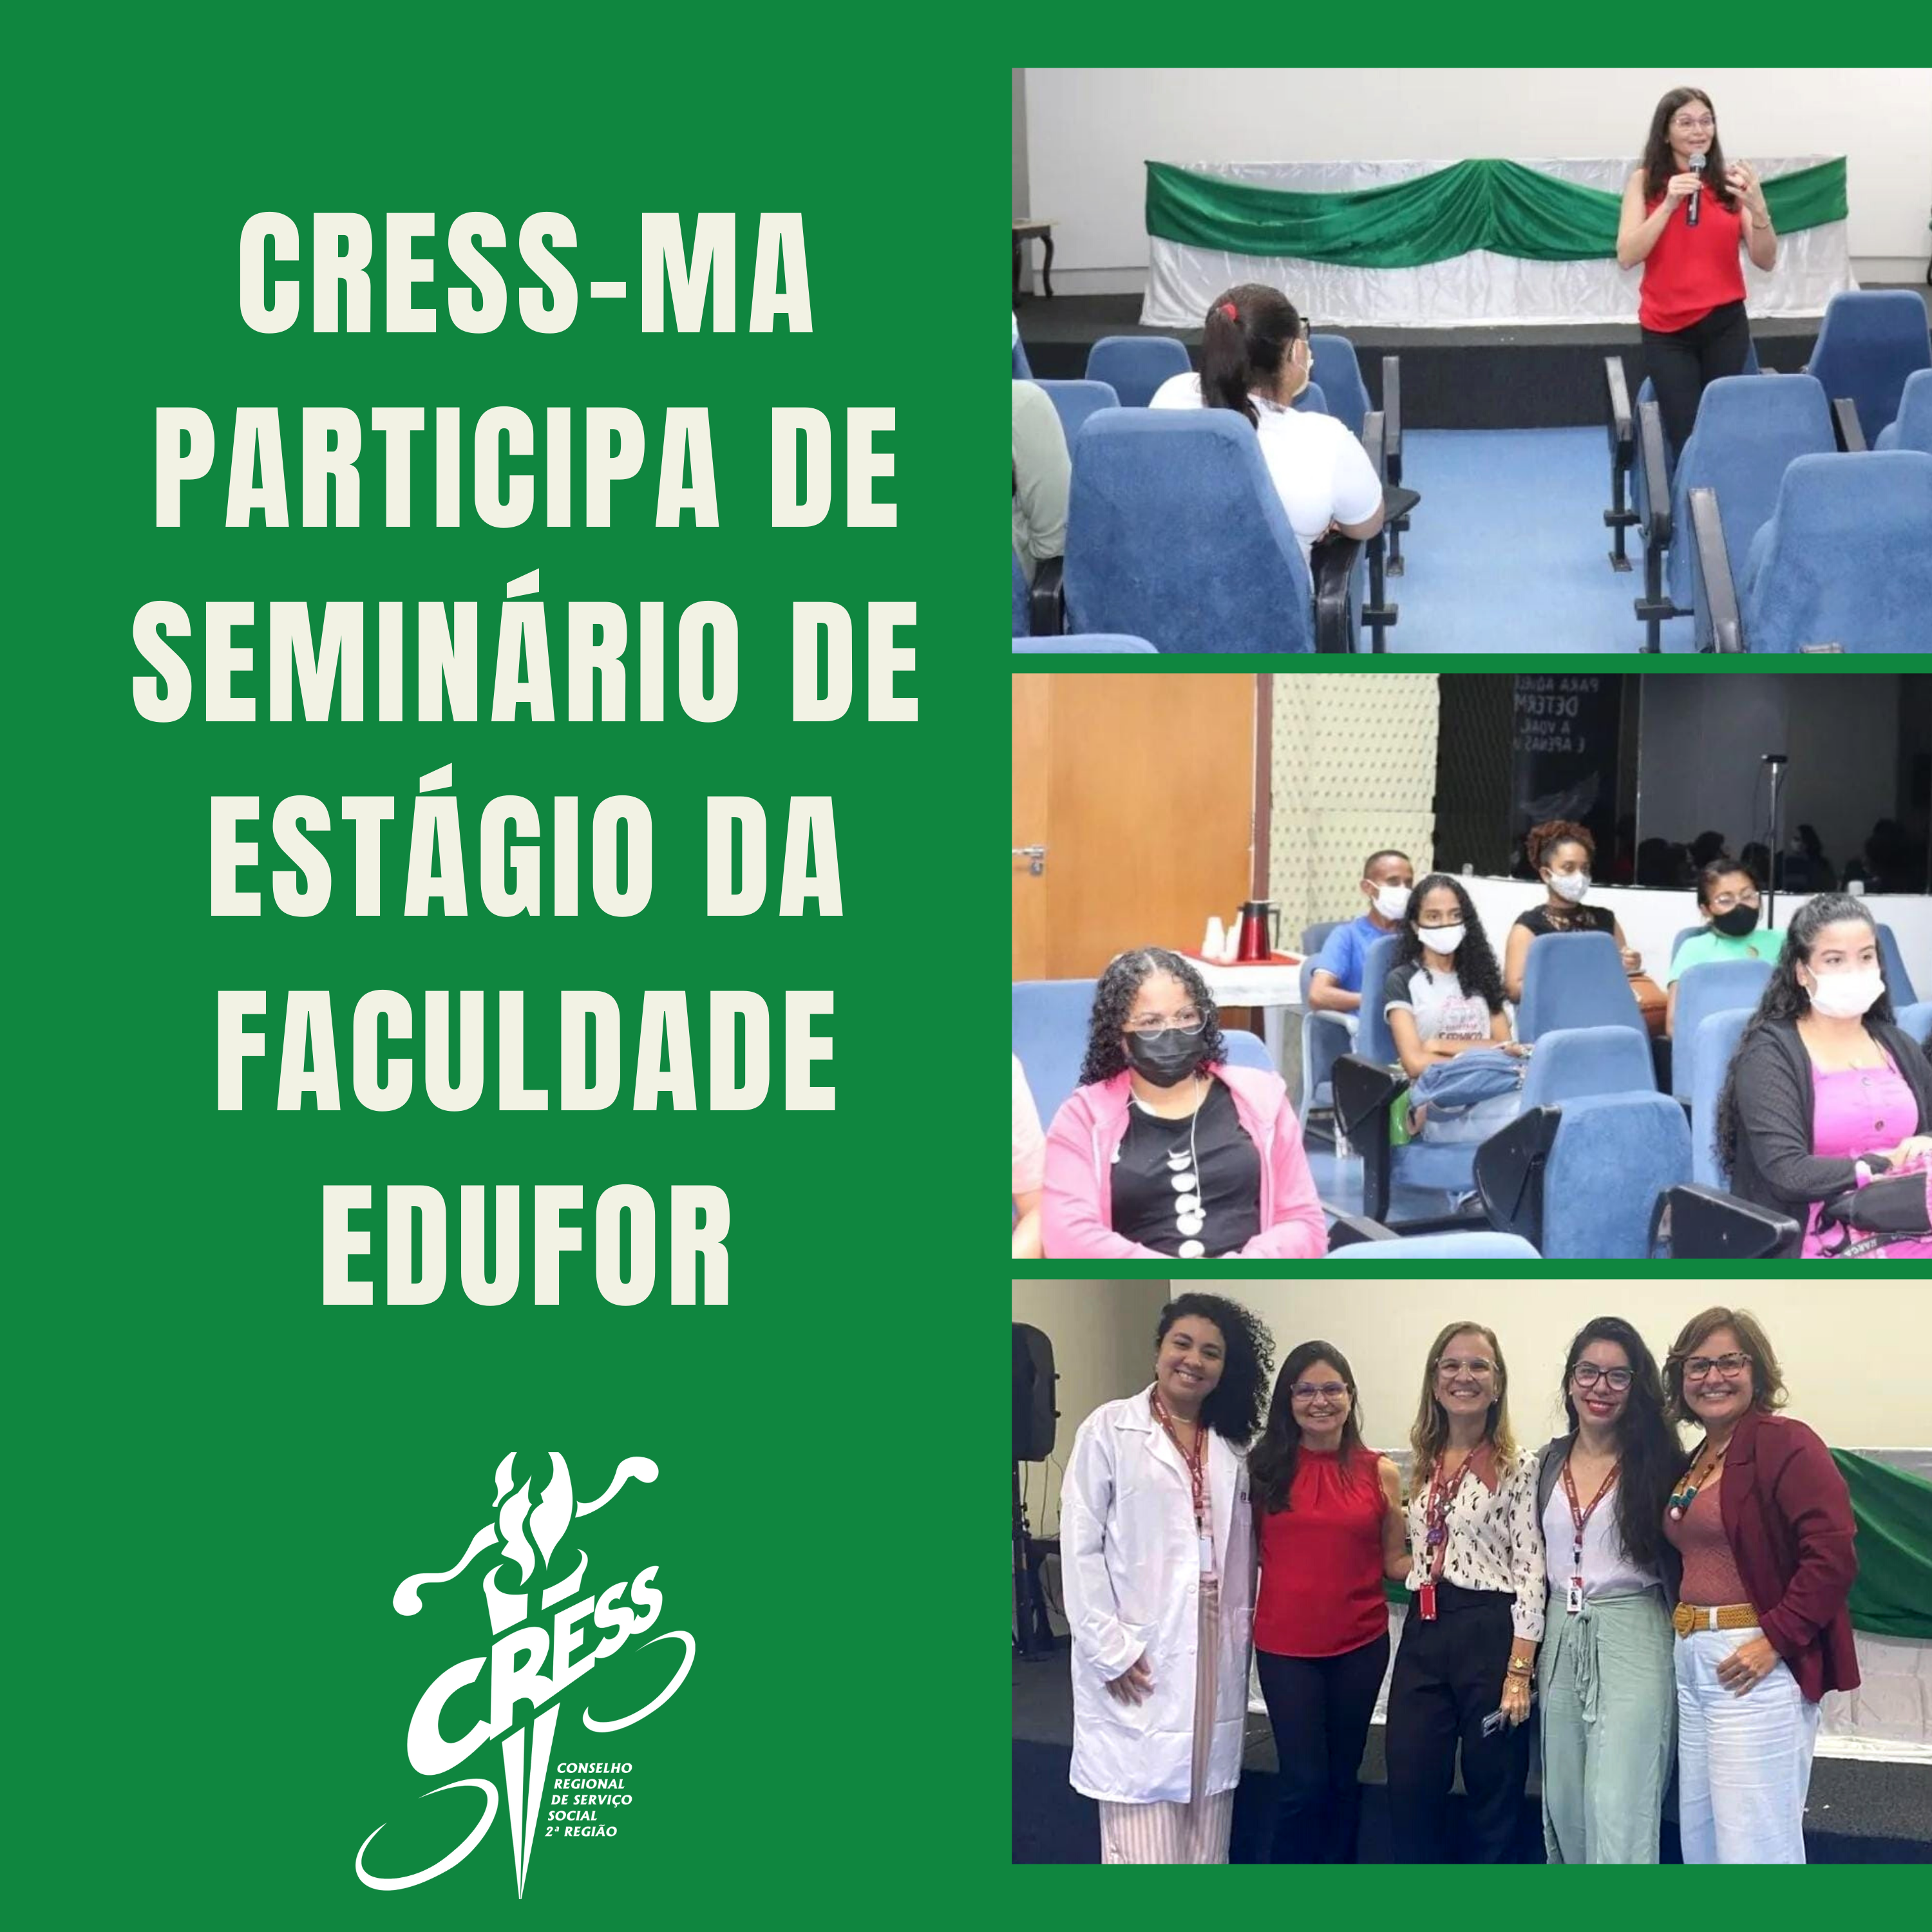 CRESS-MA participa de seminario na faculdade edufor